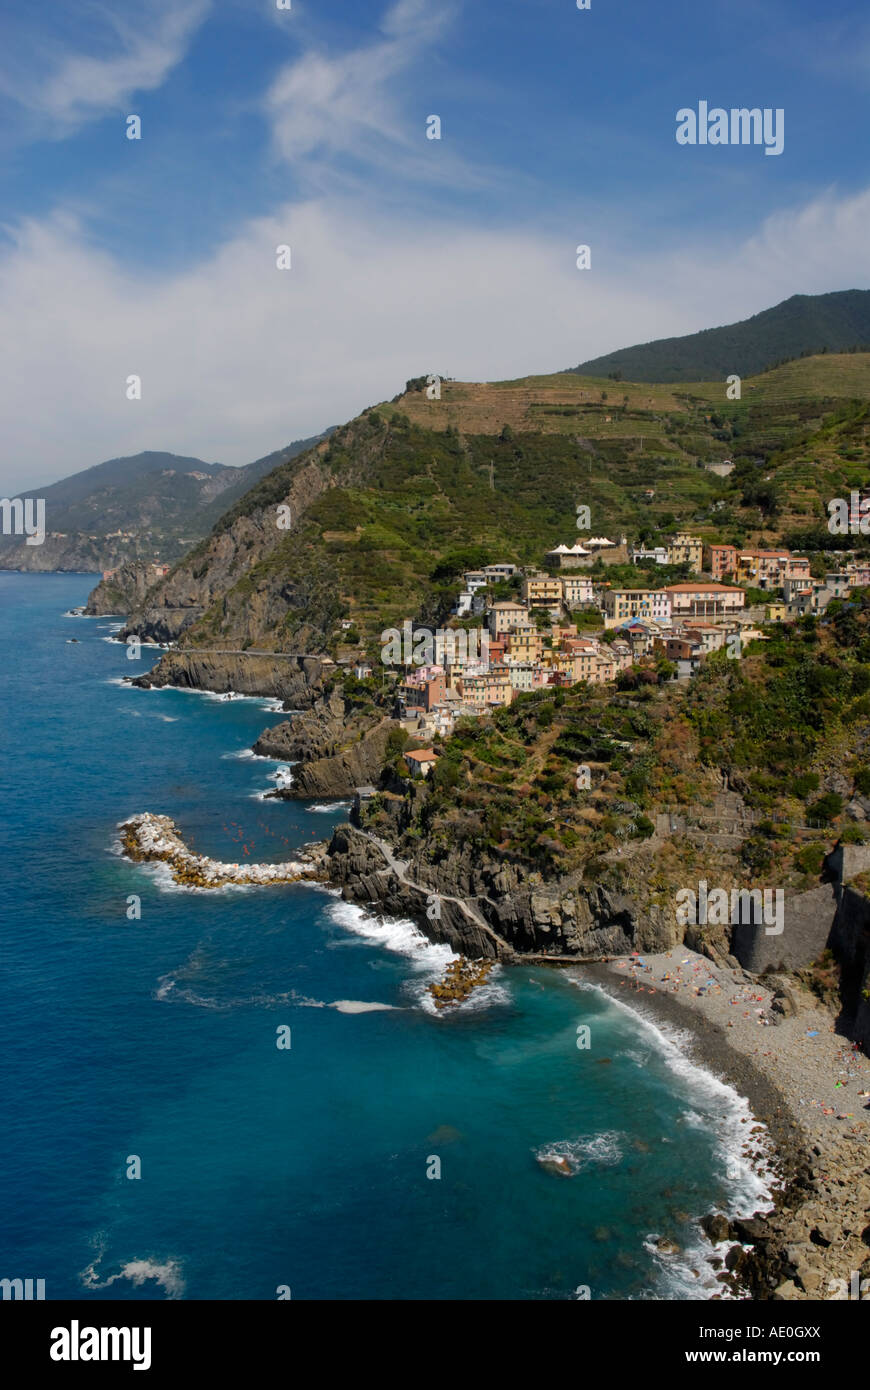 Die Cinque Terre Küste Richtung Norden.  Das erste Dorf gesehen ist Riomaggiore mit seinem Strand im Vordergrund. Stockfoto